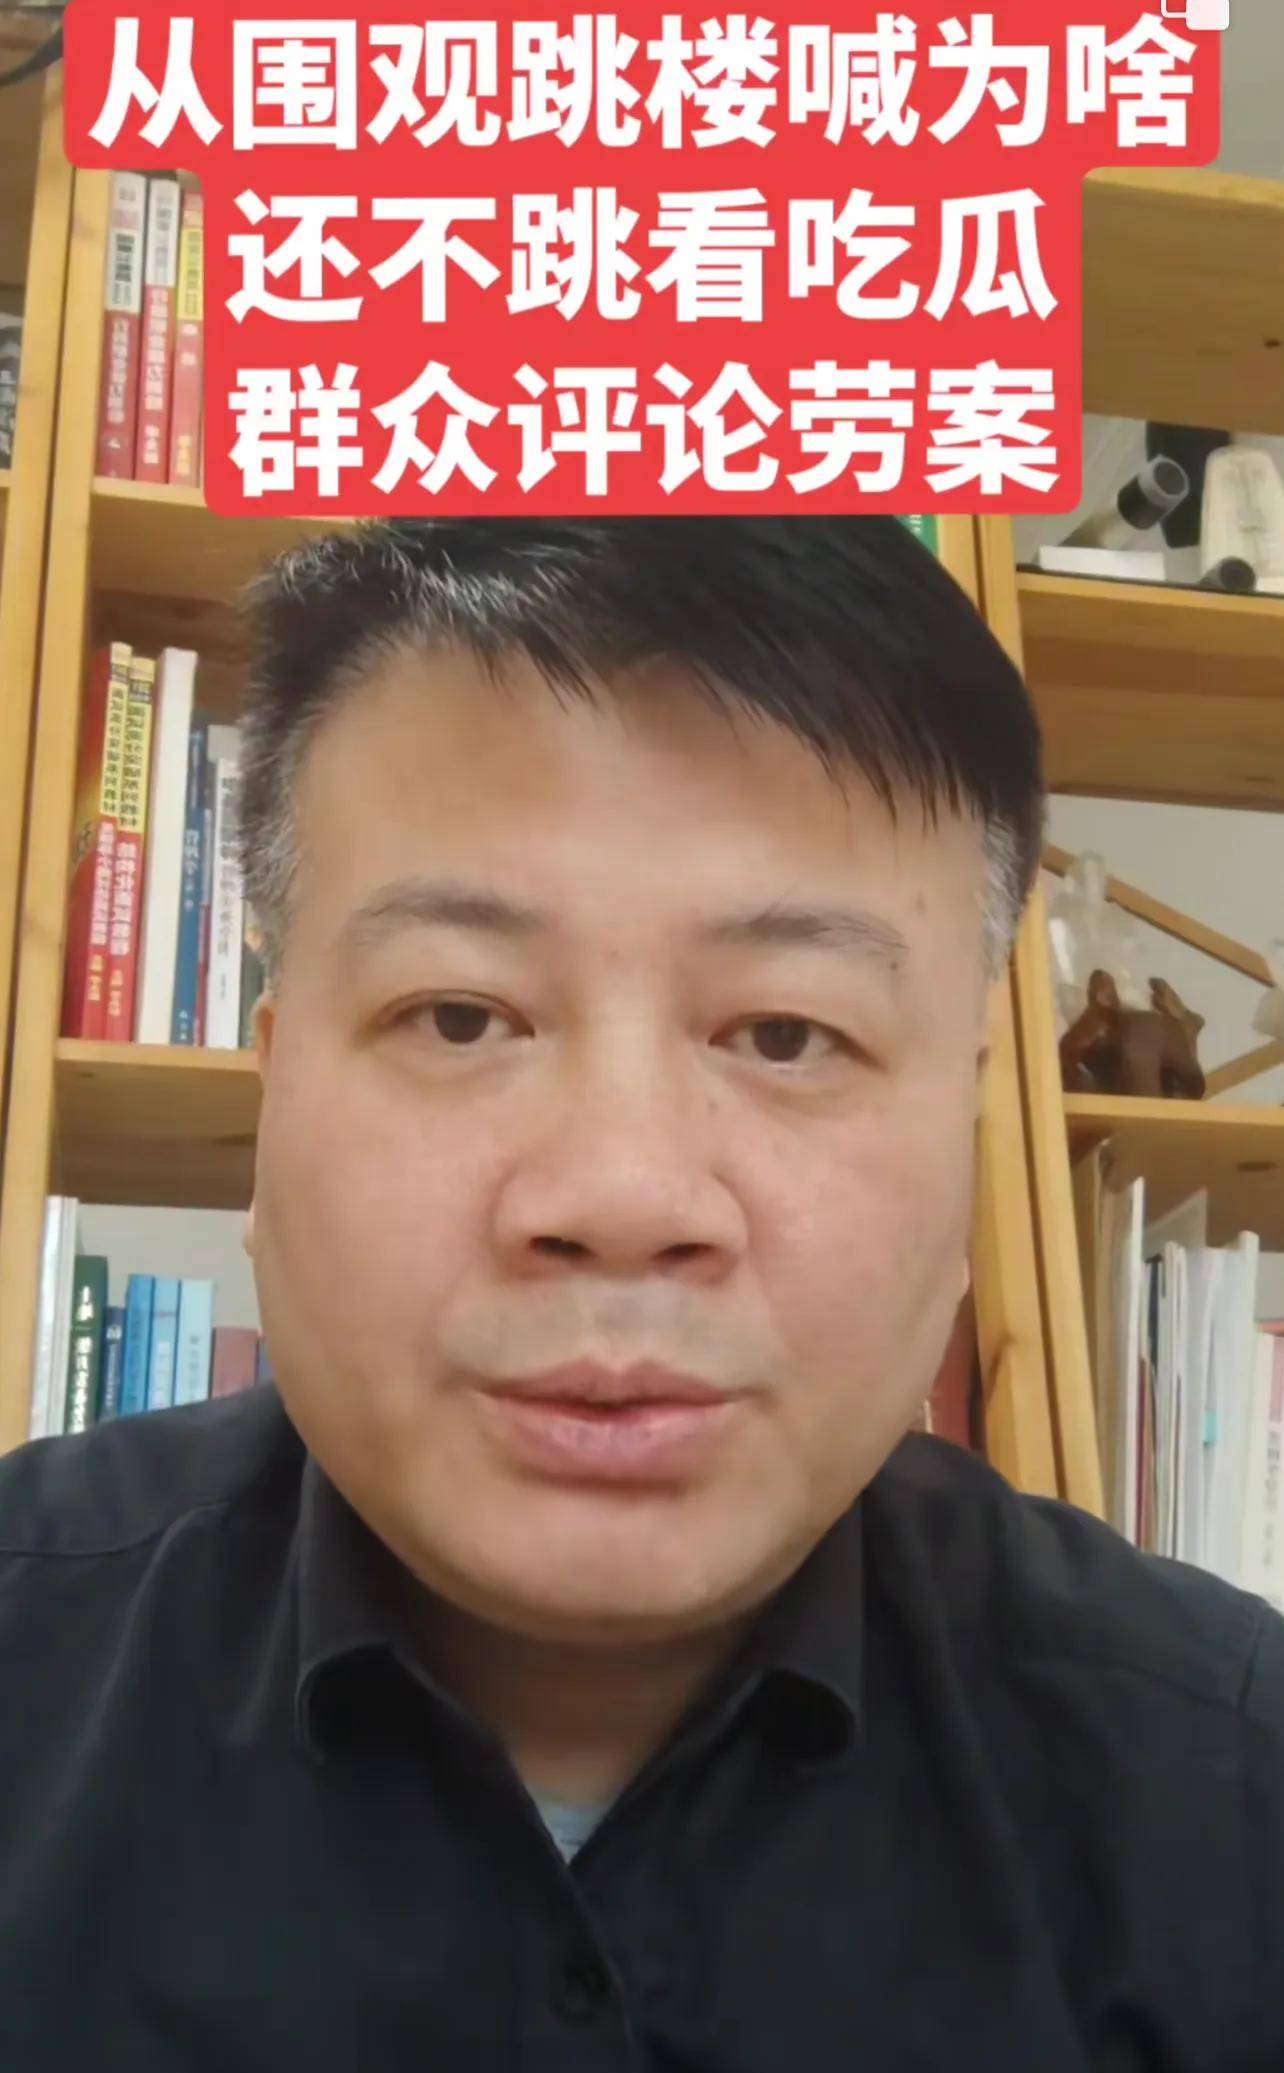 劳荣枝辩护律师谈案件新进展：劳荣枝没有义务证明自己是被胁迫的！